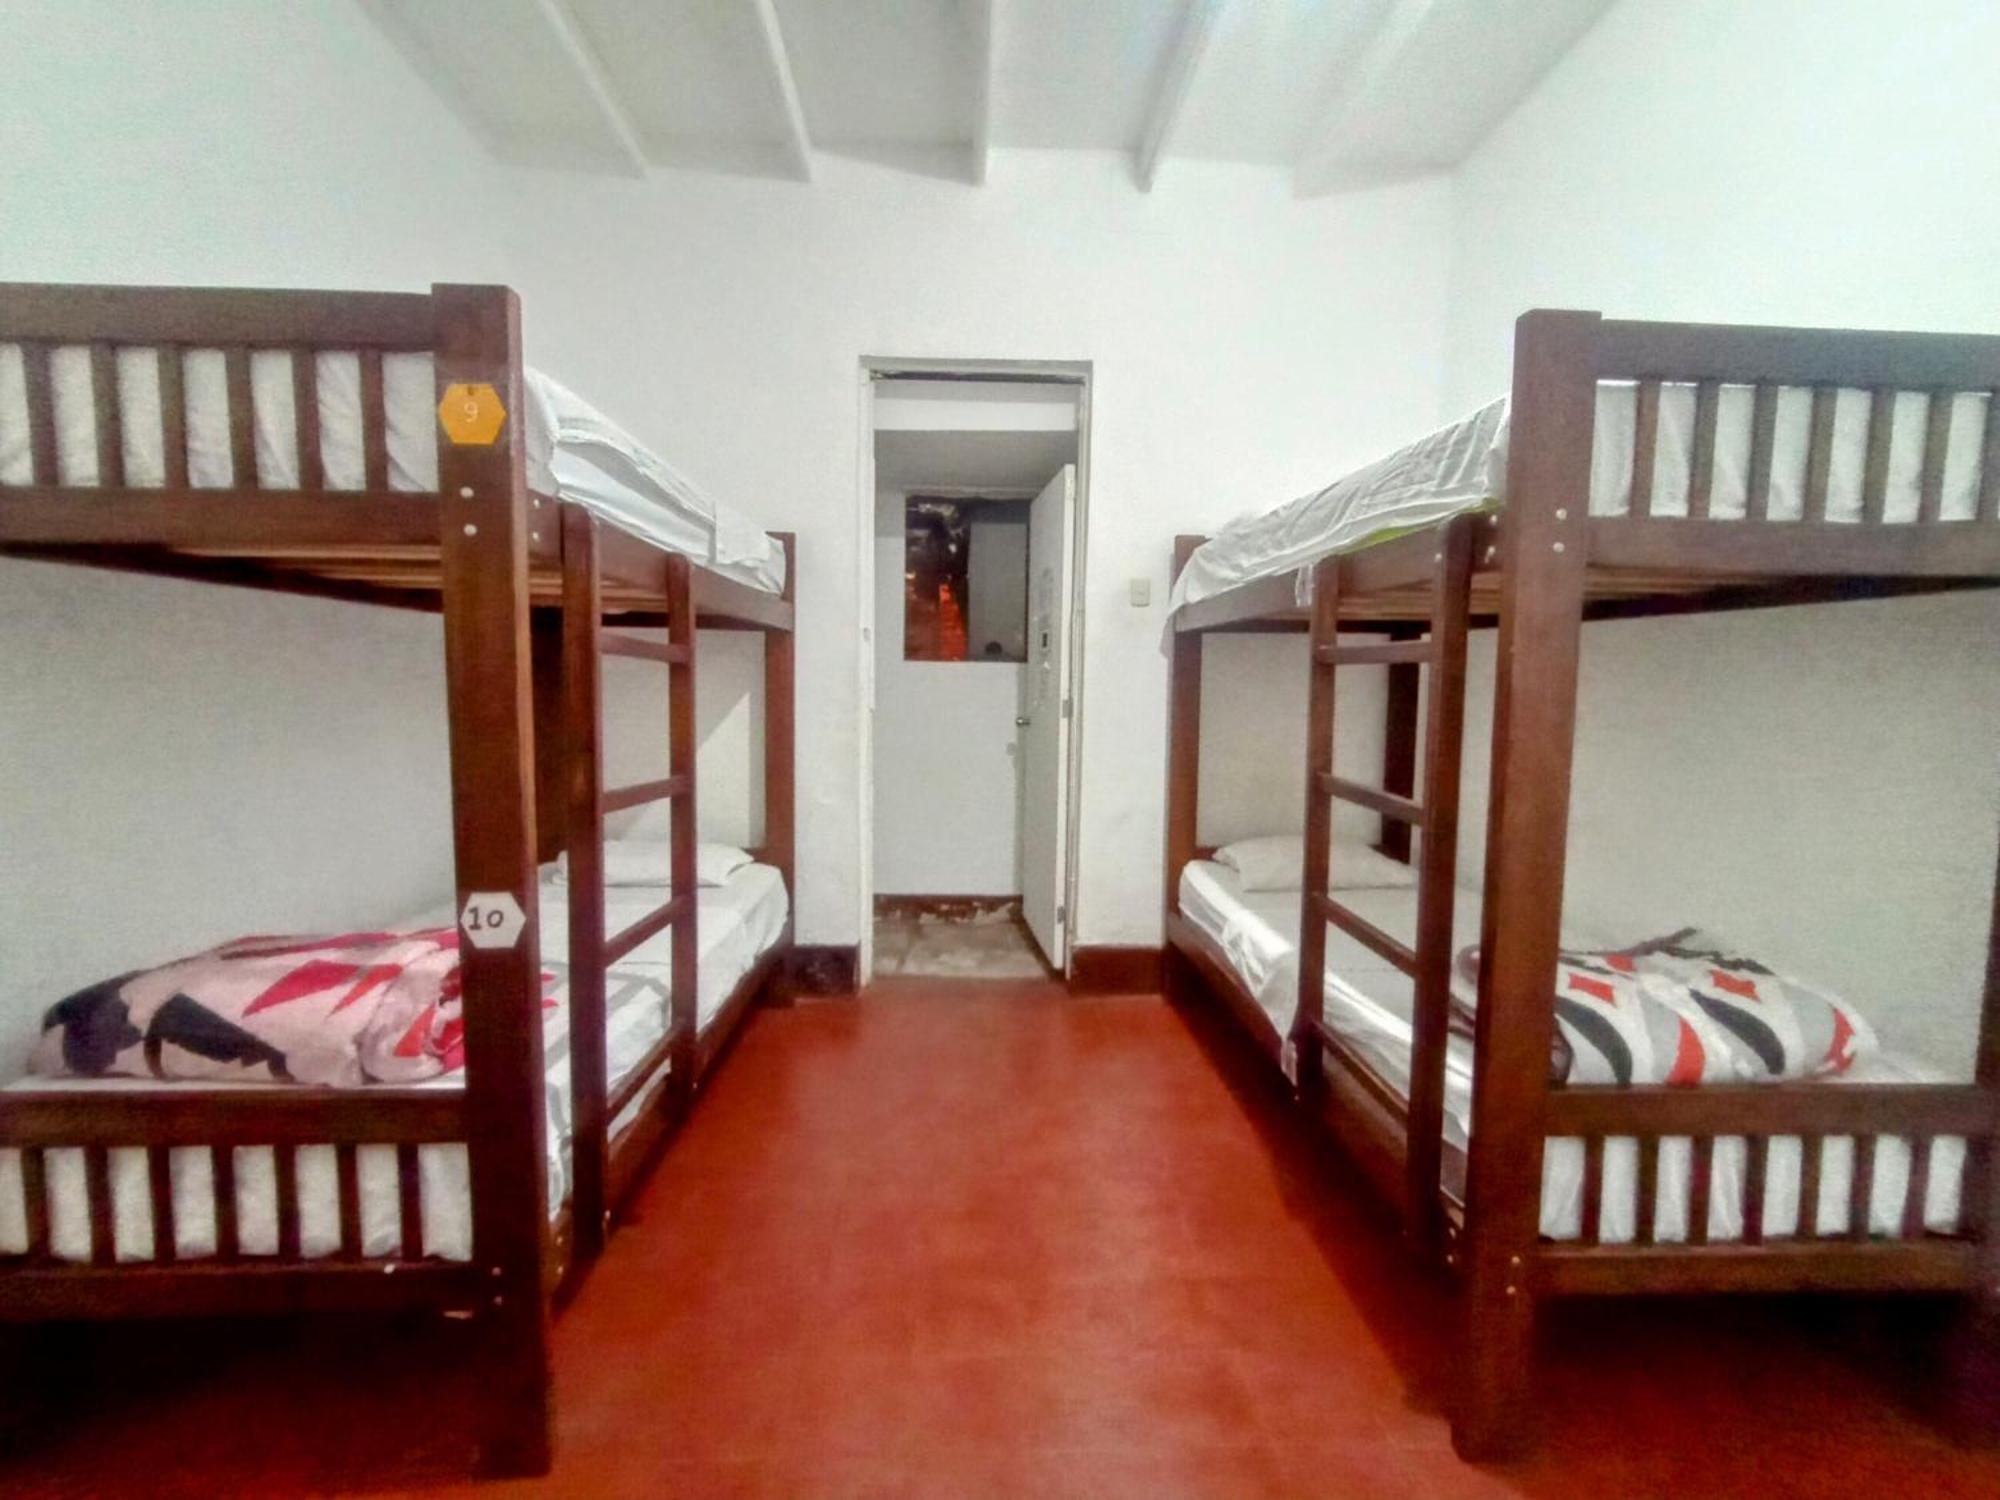 Samanai Wasi Hostel Lima Extérieur photo